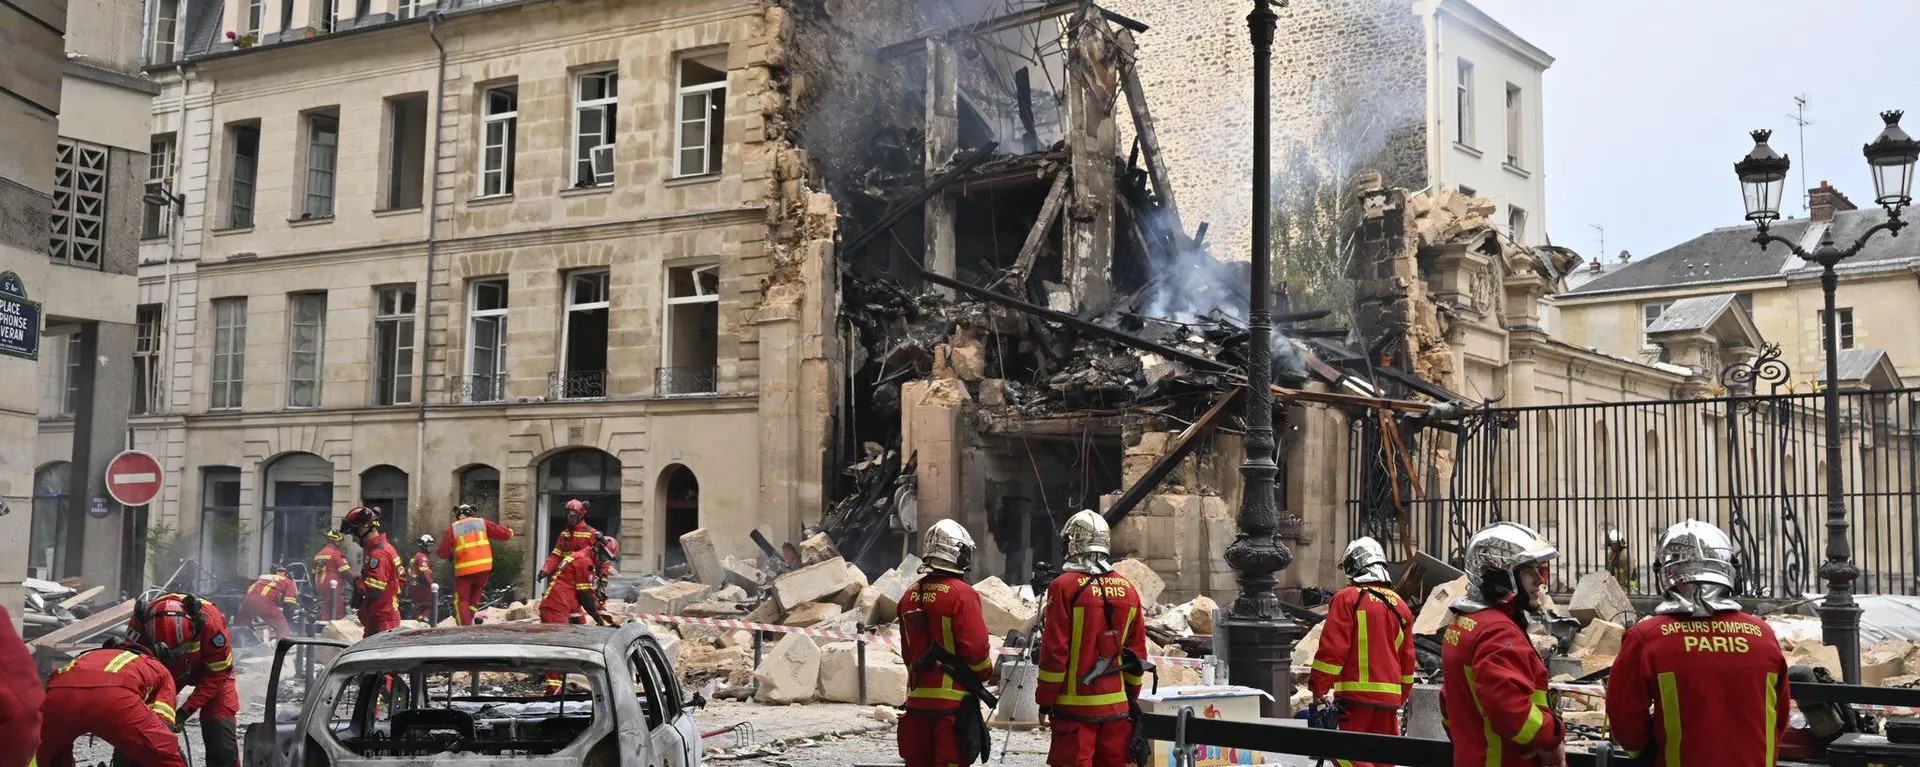 Aumenta a 50 el número de heridos por explosión en centro de París